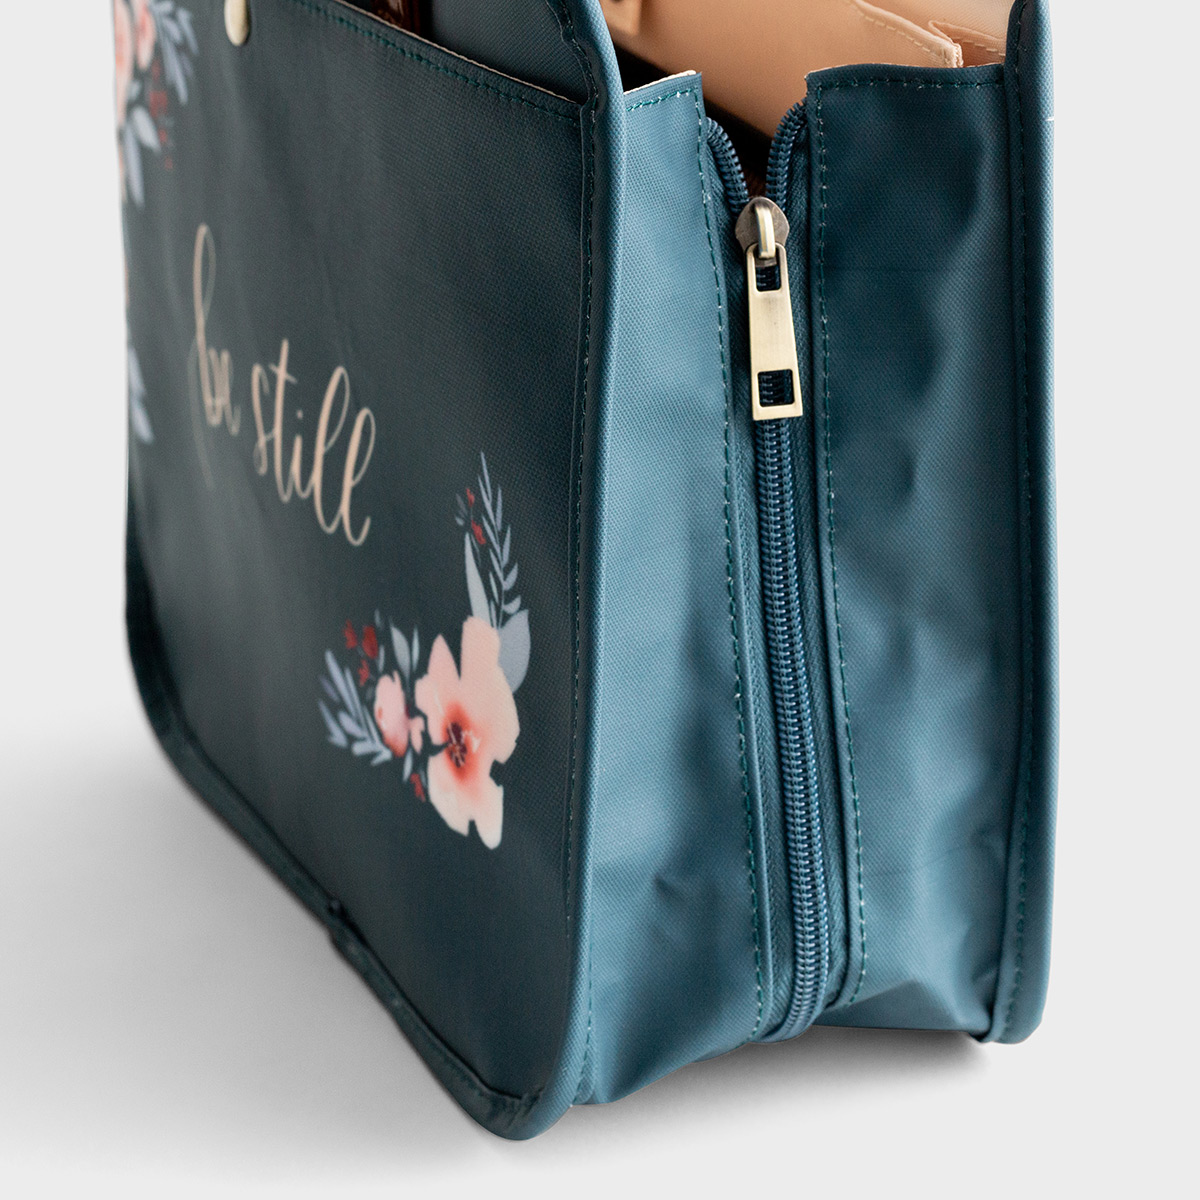 Studio 71 - Be Still - Floral Organization Bag